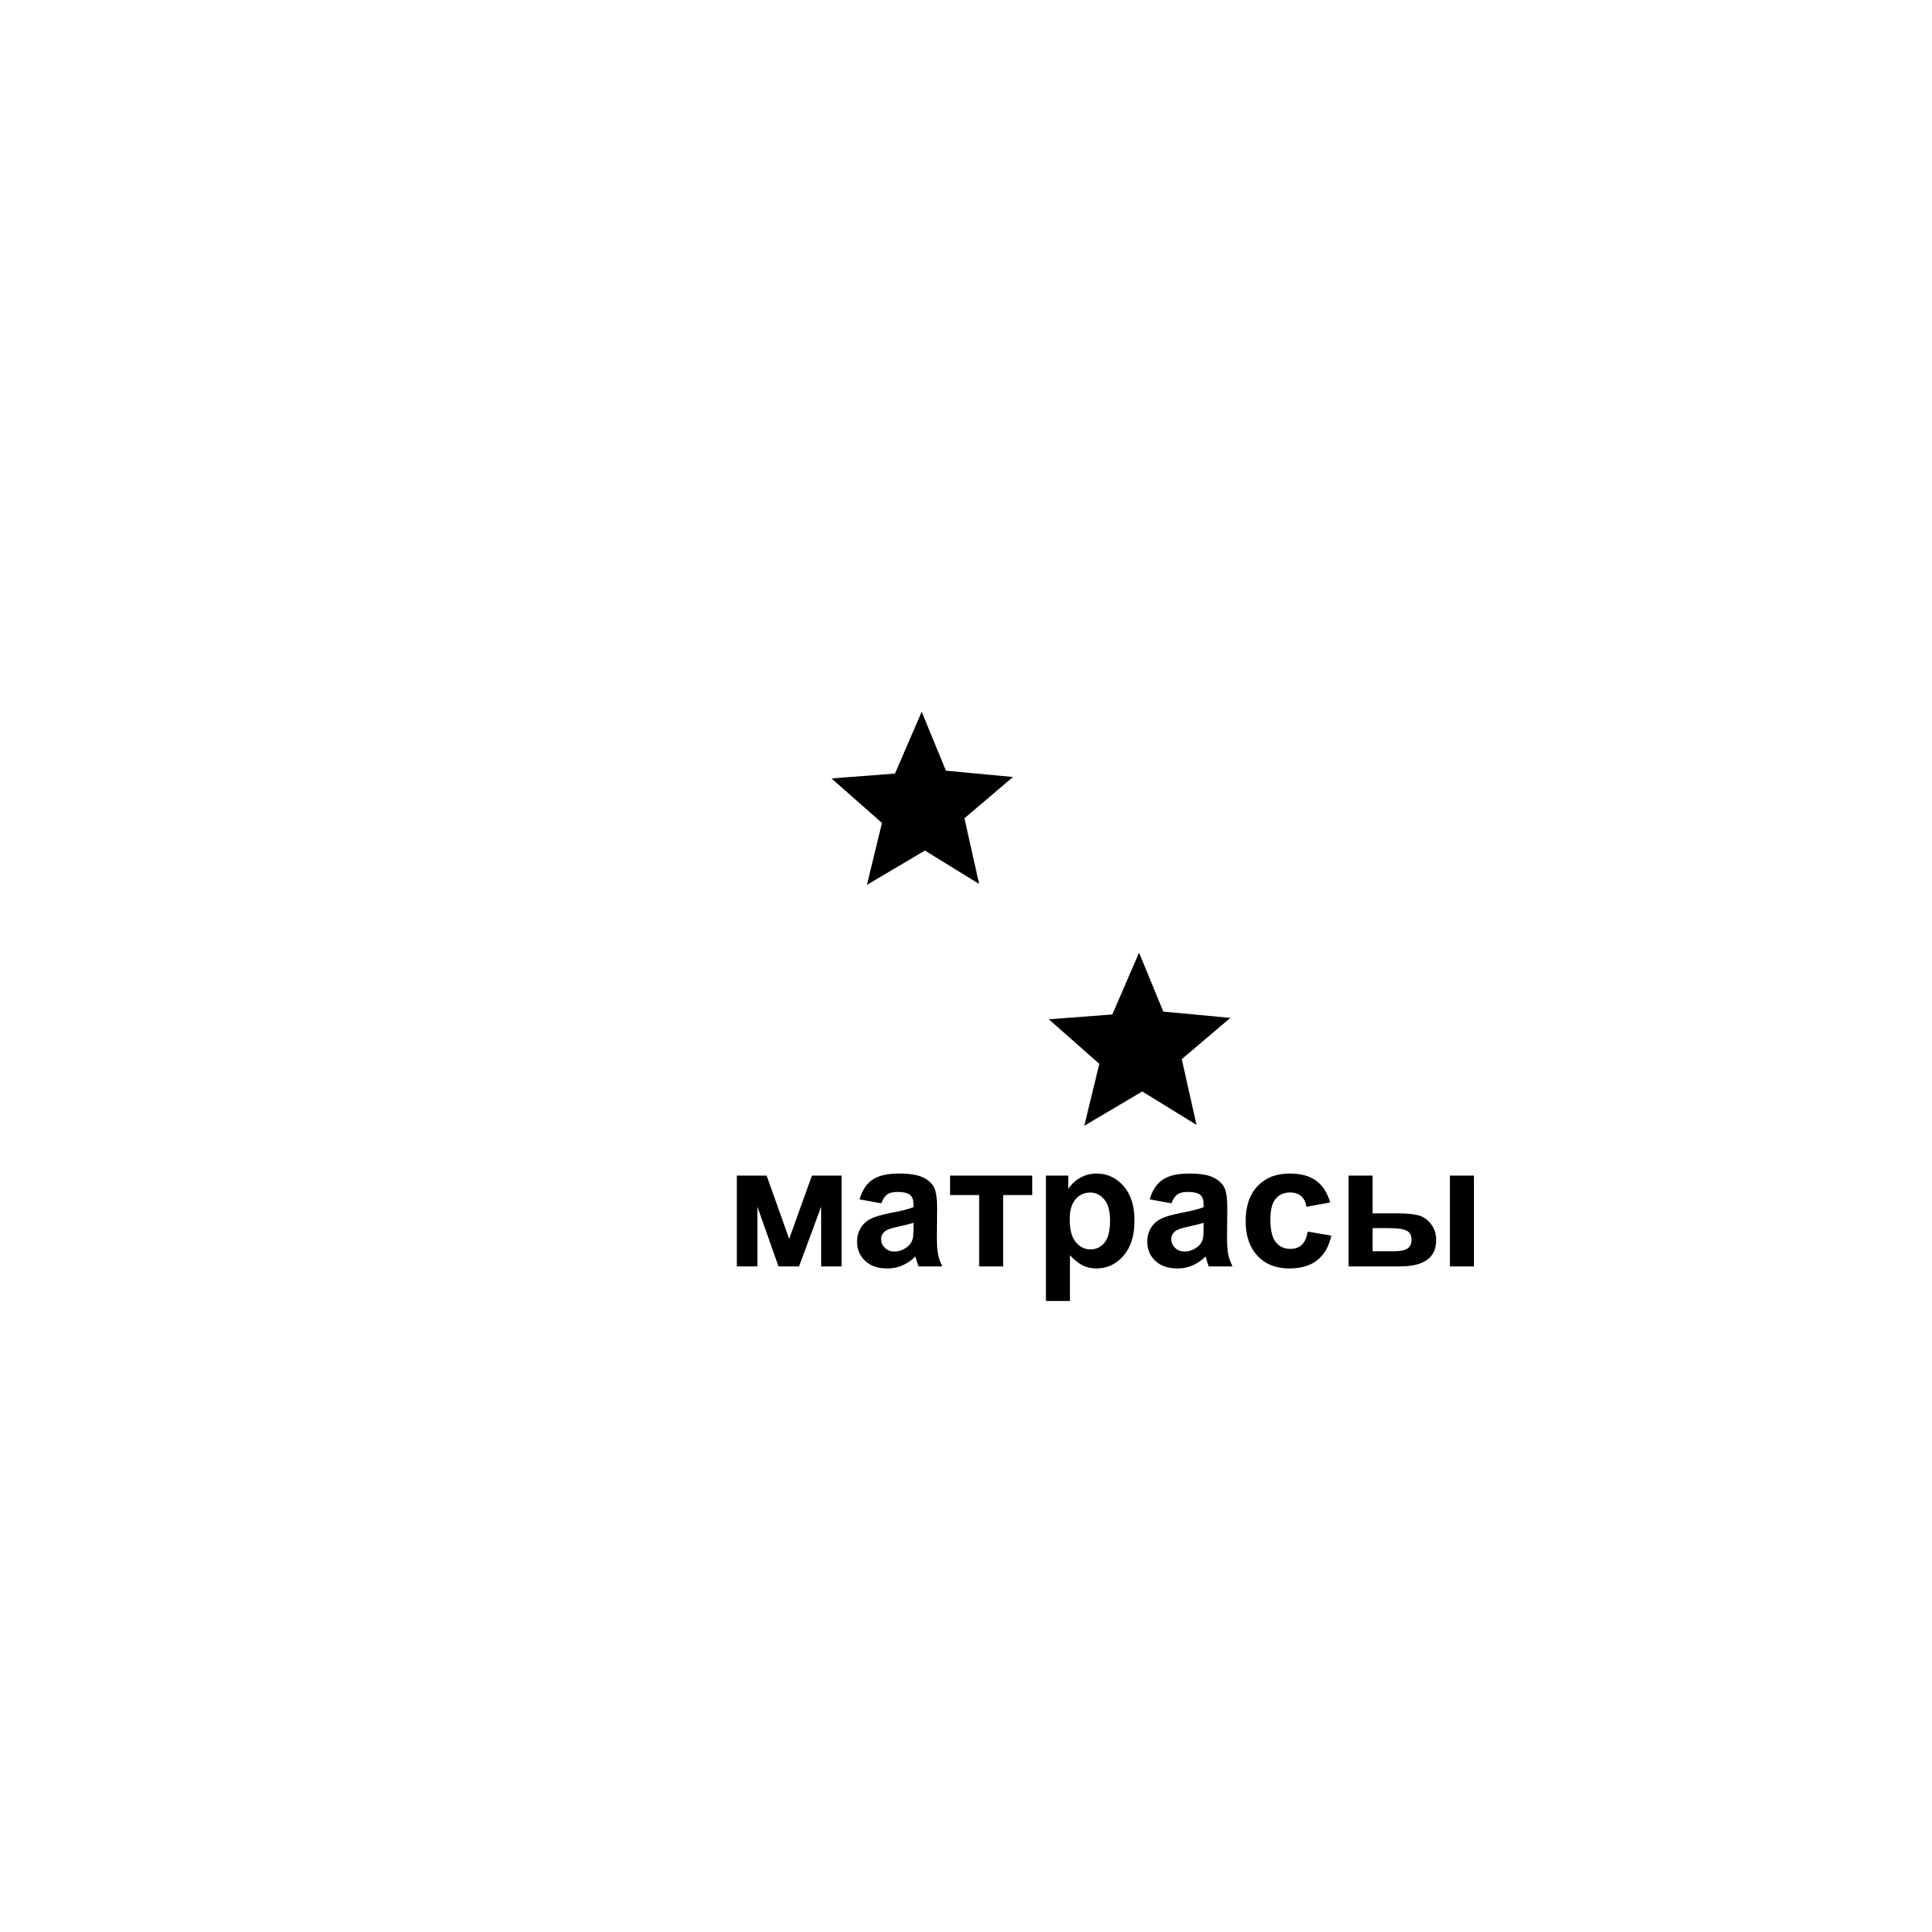 Cosul Logo - Consul Logo PNG Transparent & SVG Vector